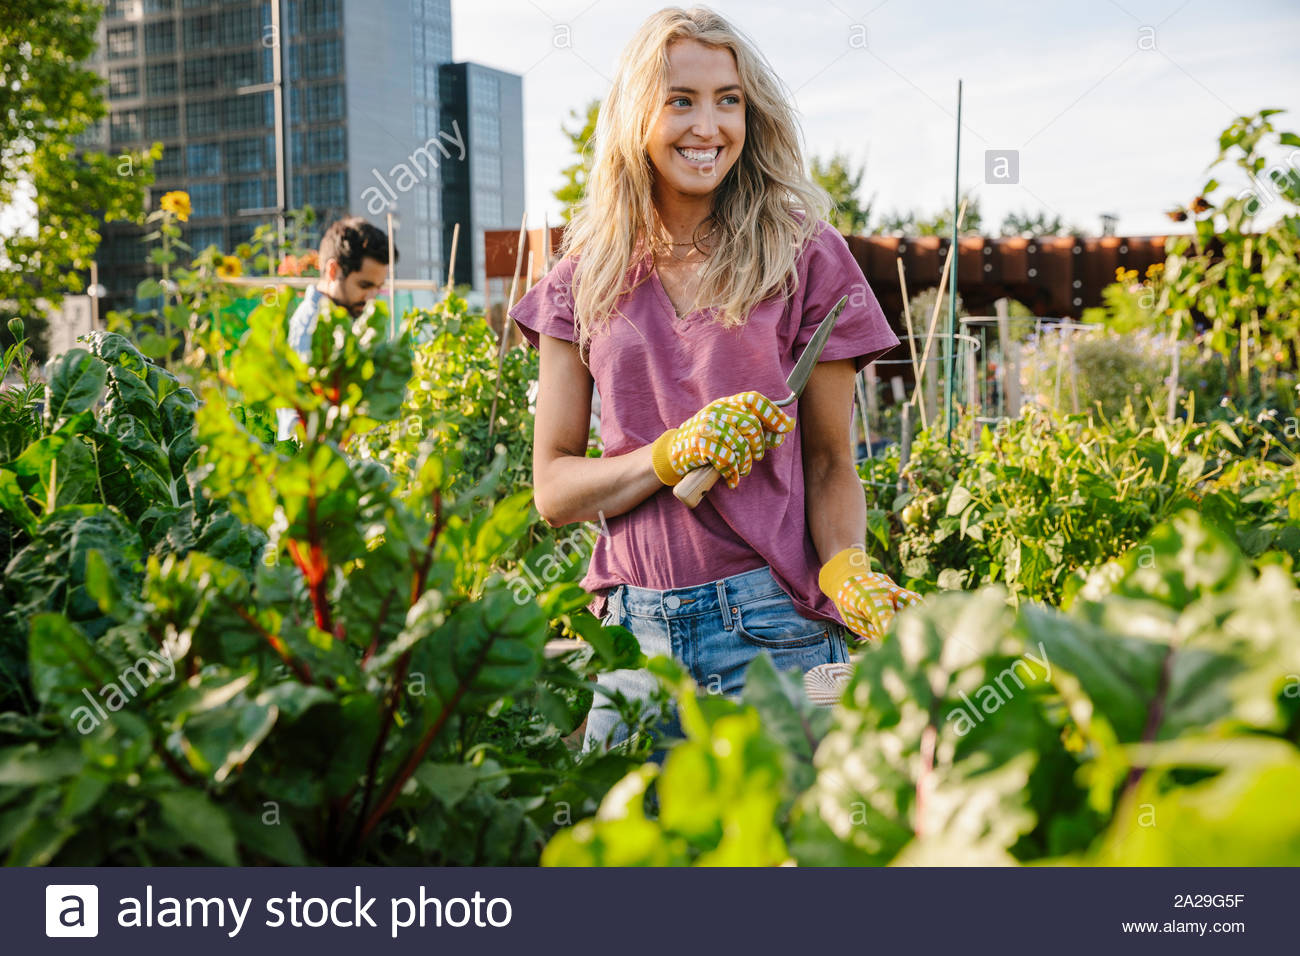 Portrait of happy young woman en milieu urbain, le jardin communautaire Banque D'Images